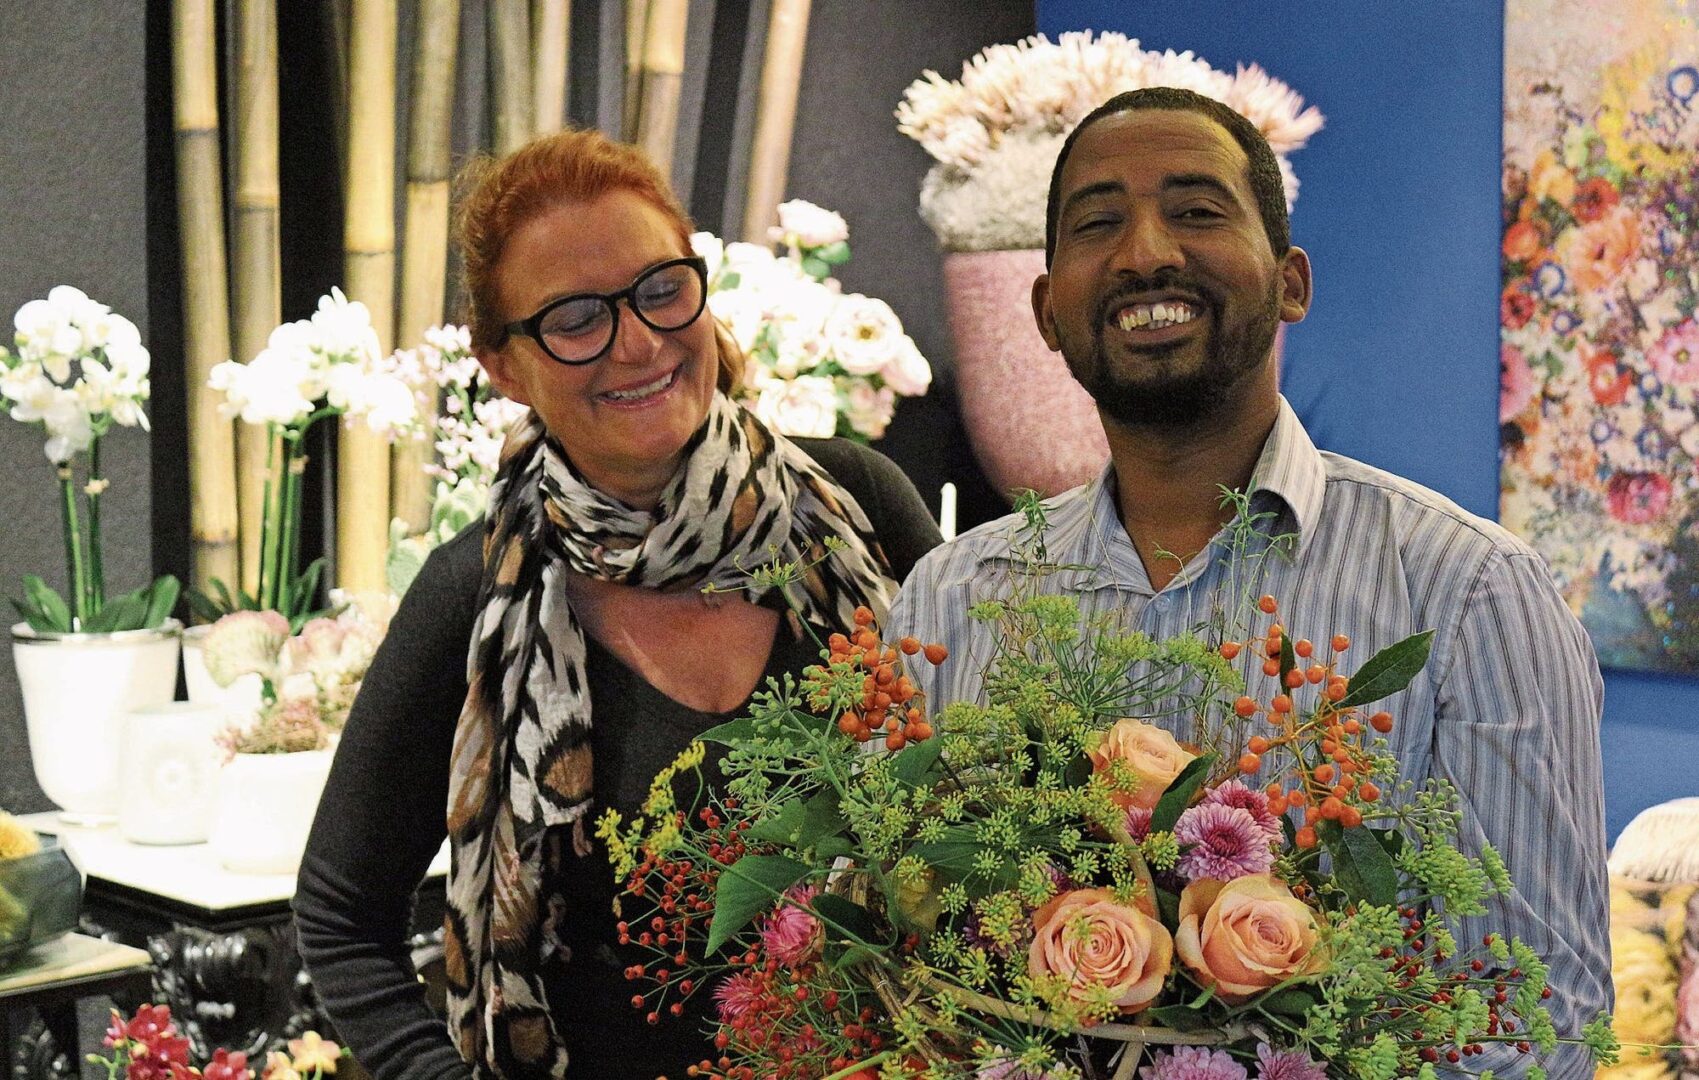 Blumen bündeln statt salutieren – Eritreer gelingt Neuanfang bei Horner Floristin